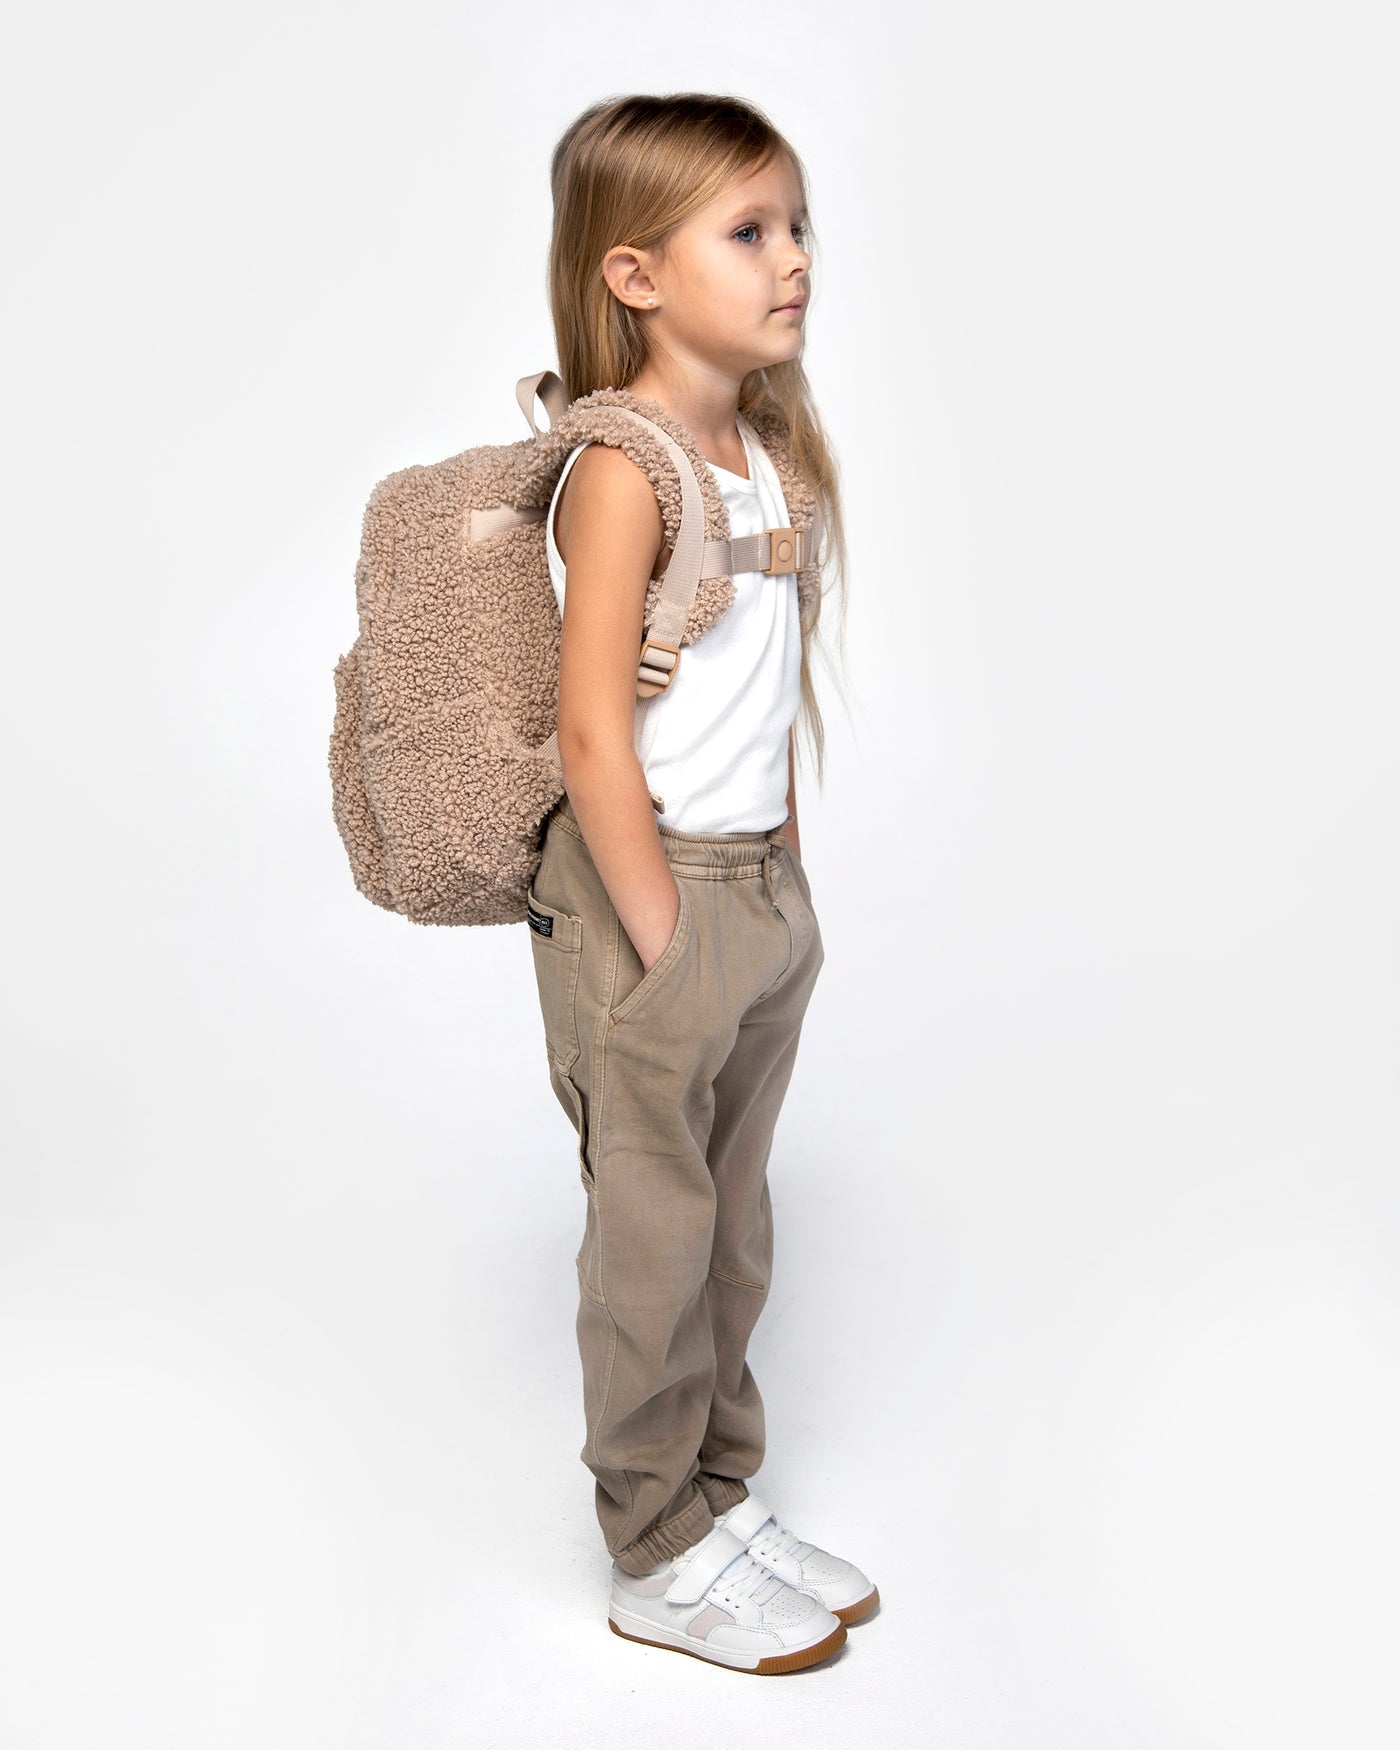 7 A.M. Enfant Teddy Backpack - Twinkle Twinkle Little One